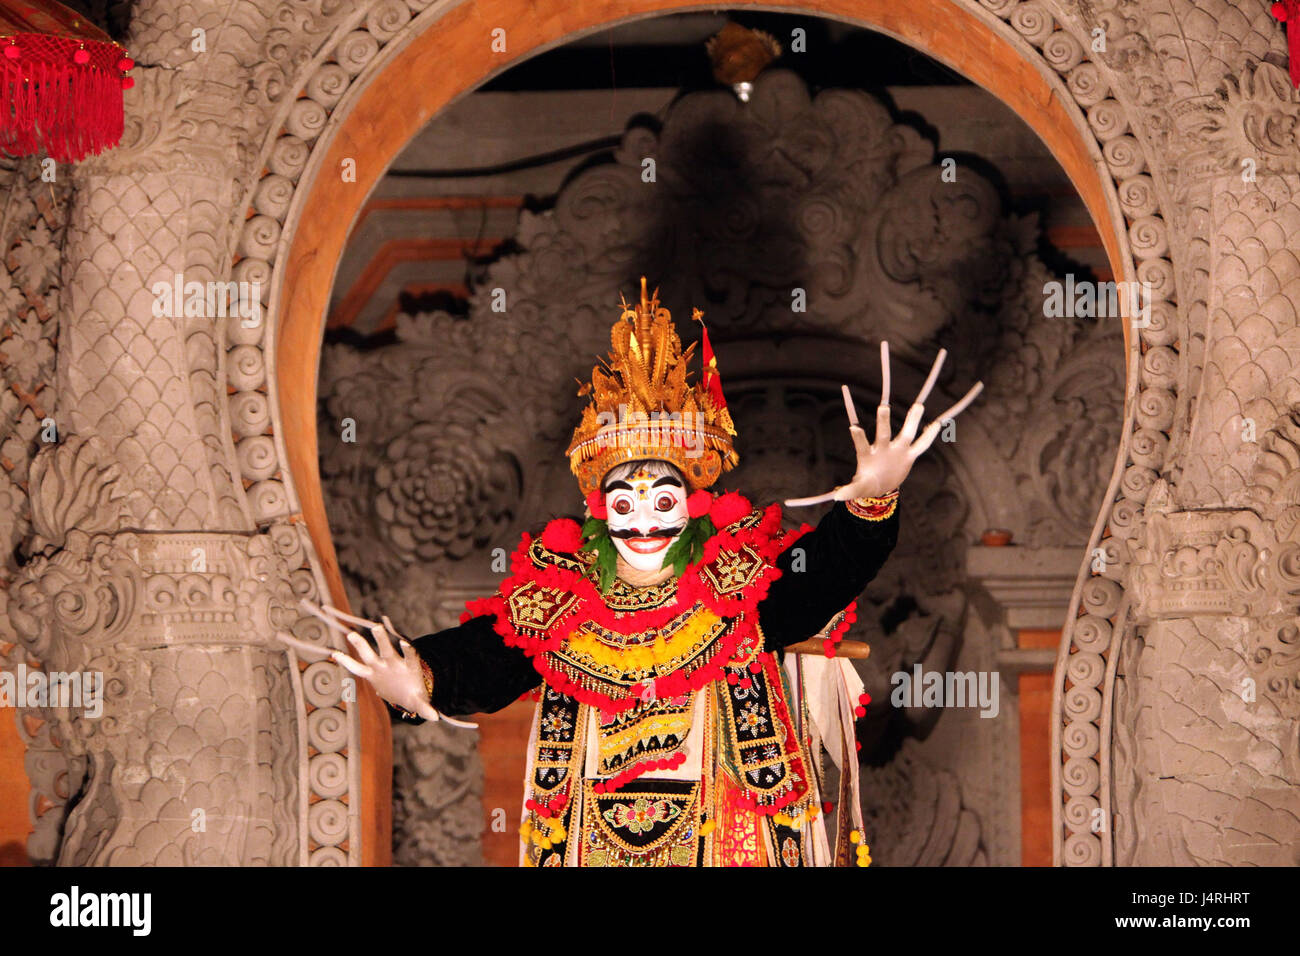 Indonesia, Bali, island, Ulu Watu, temple, culture, architecture, evening, dance, mask, Stock Photo